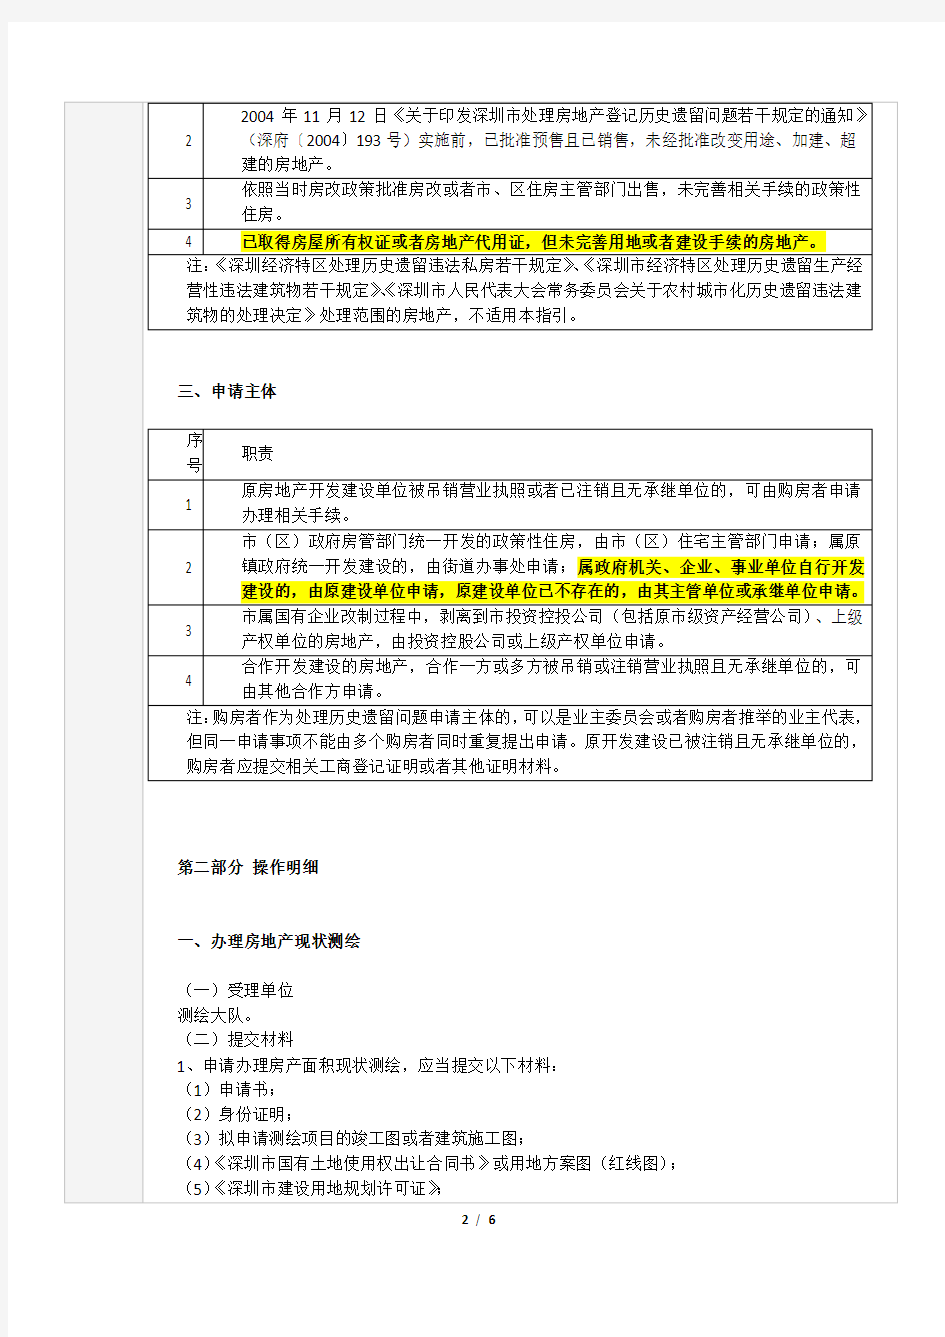 深圳市房地产登记历史遗留问题《关于加强房地产登记历史遗留问题处理工作的若干意见》操作指引